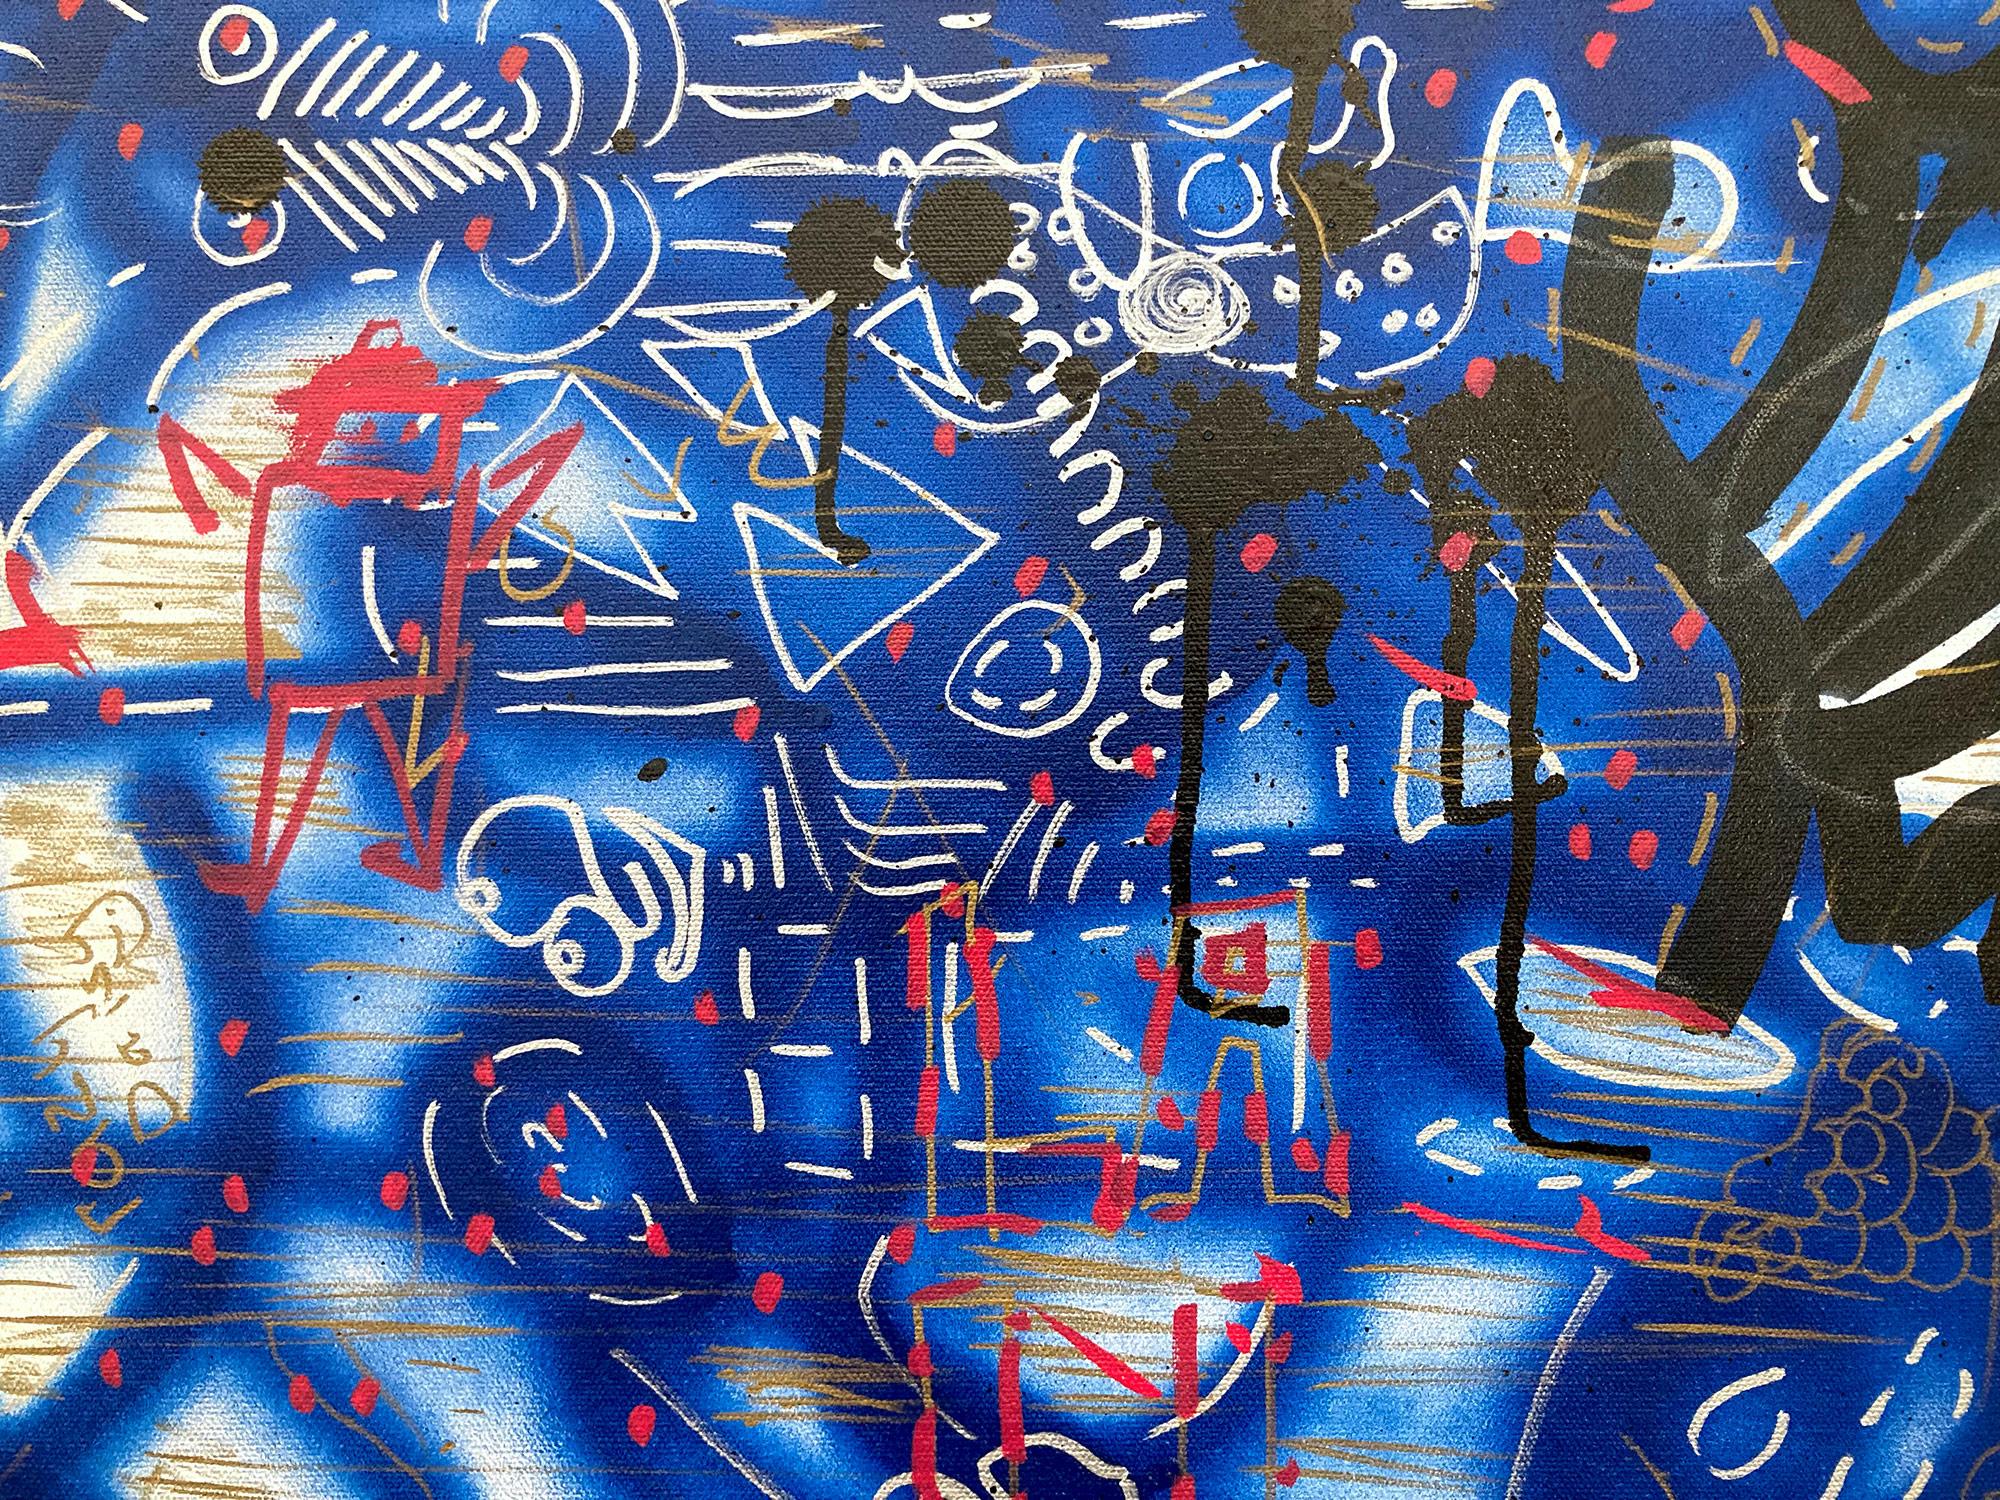 « Music Box » décorée de graffitis sur toile, peinture acrylique et encre sur toile - Painting de LA II (Angel Ortiz)